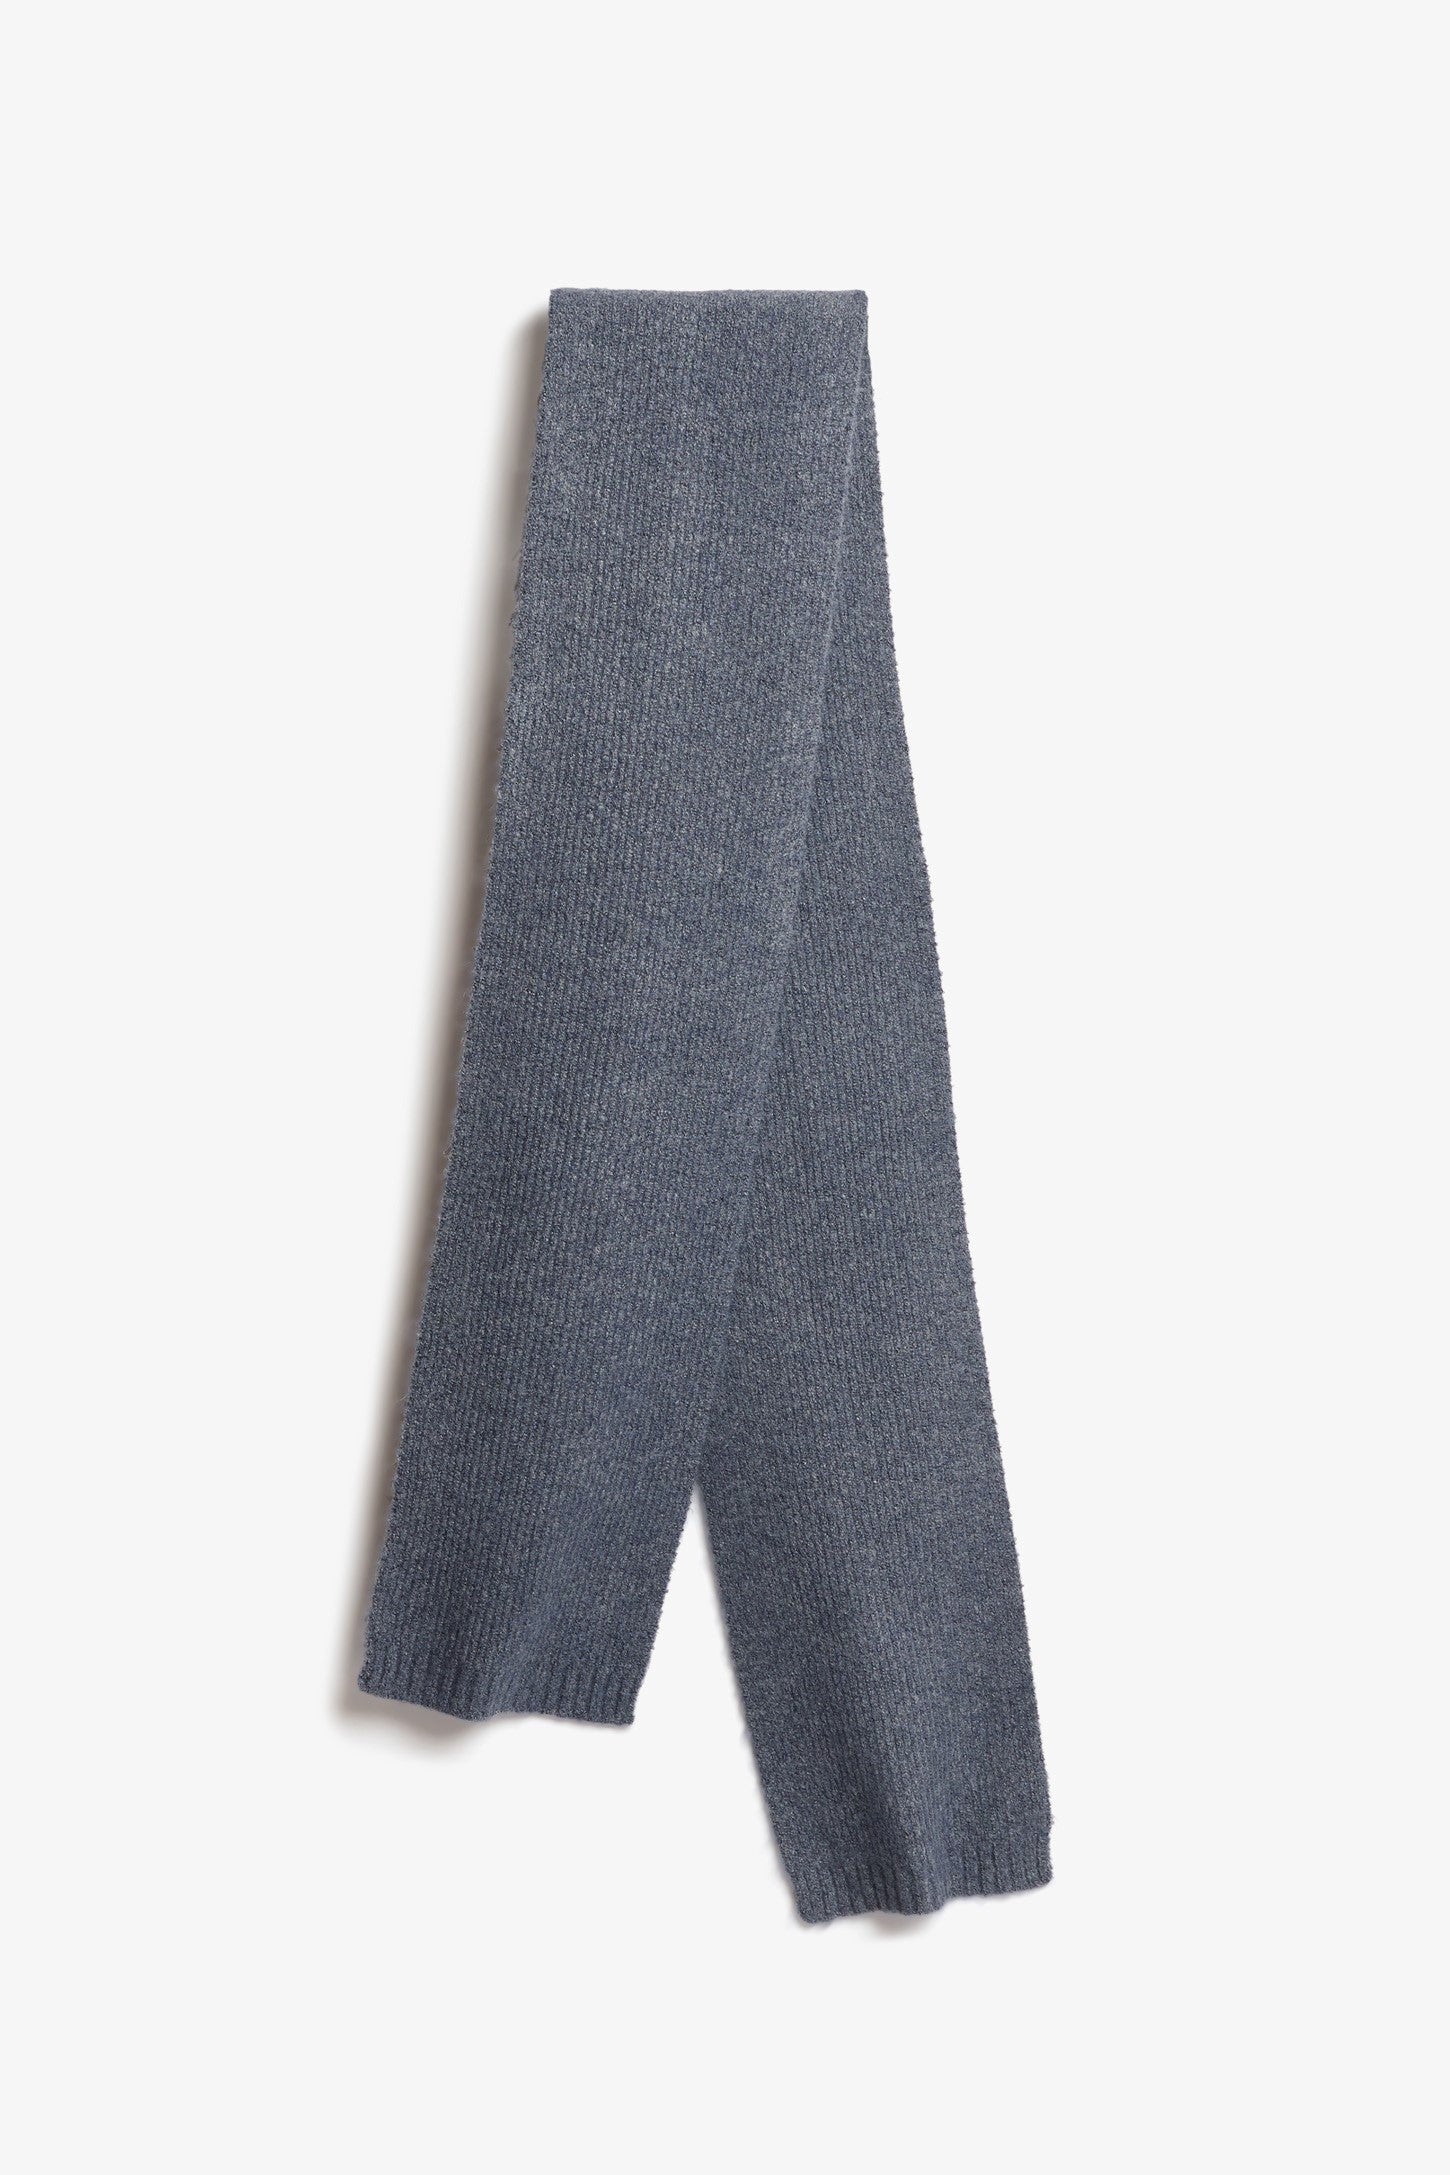 Foulard en tricot, polyester recyclé - Femme && GRIS FONCE